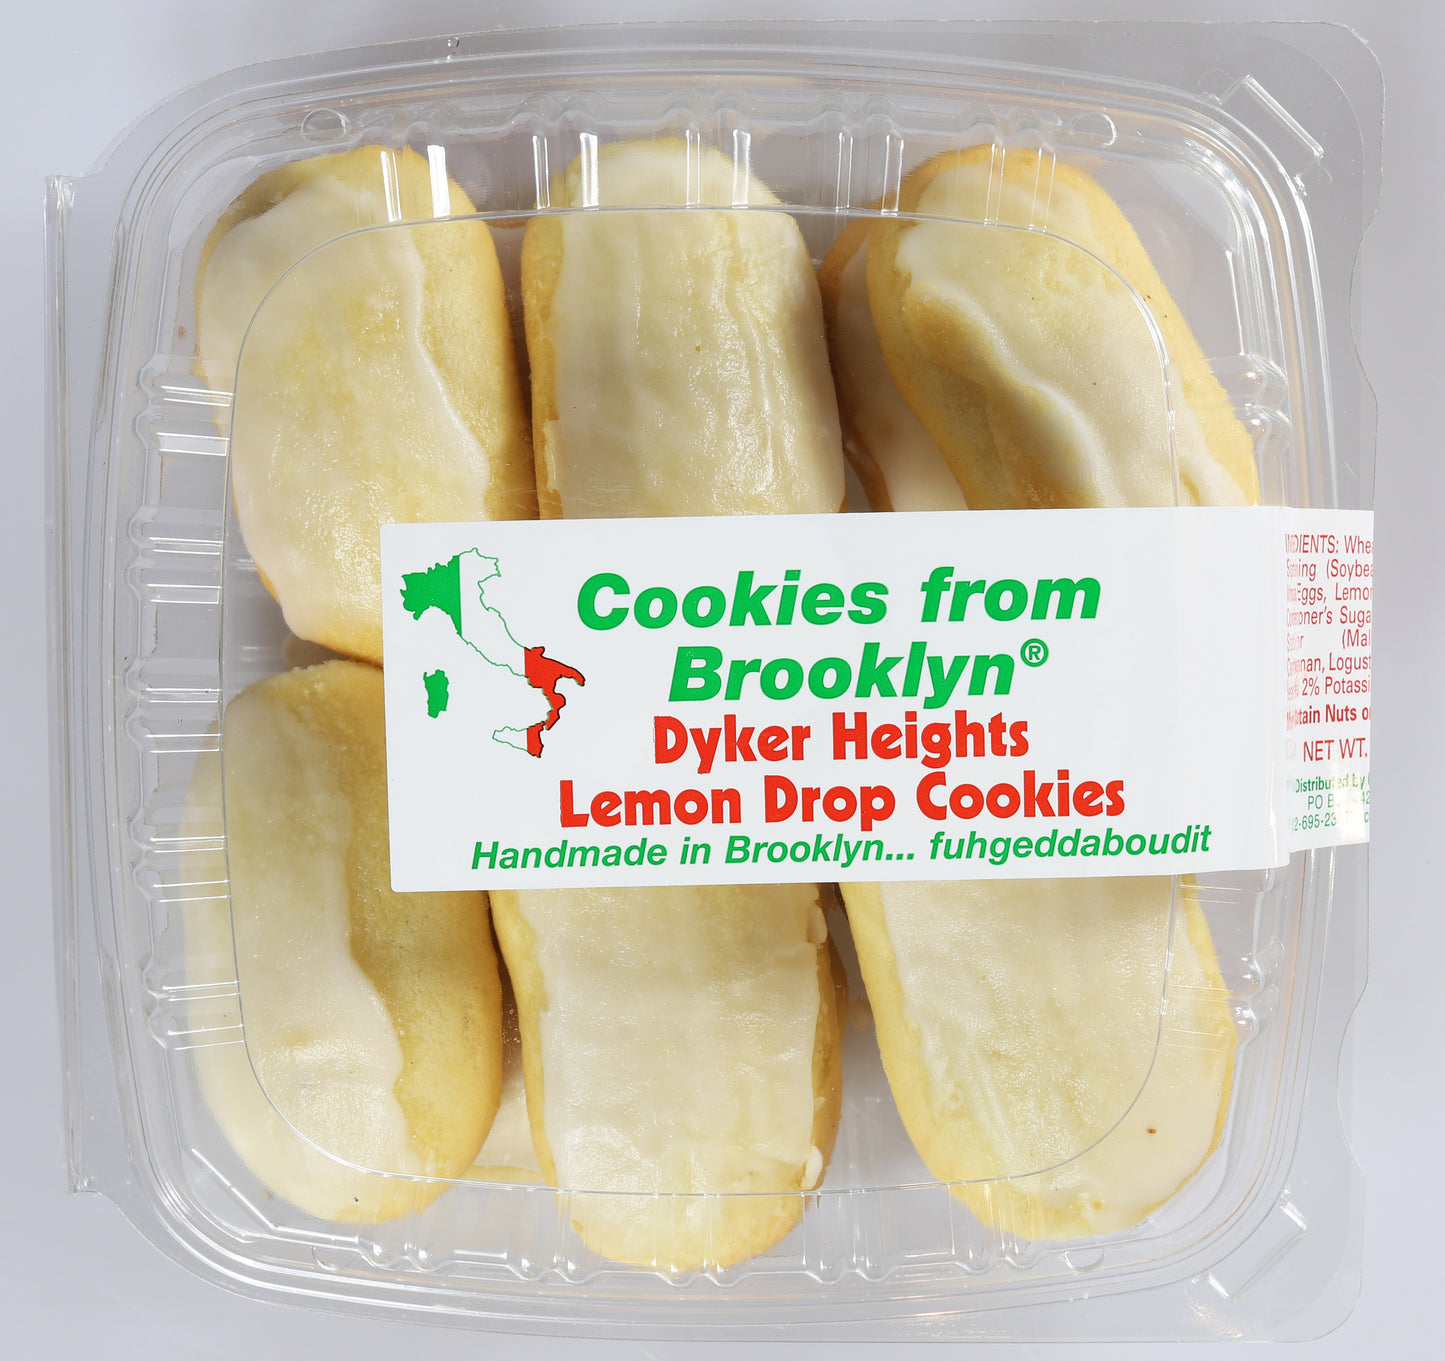 Dyker Heights Lemon Drop Cookies